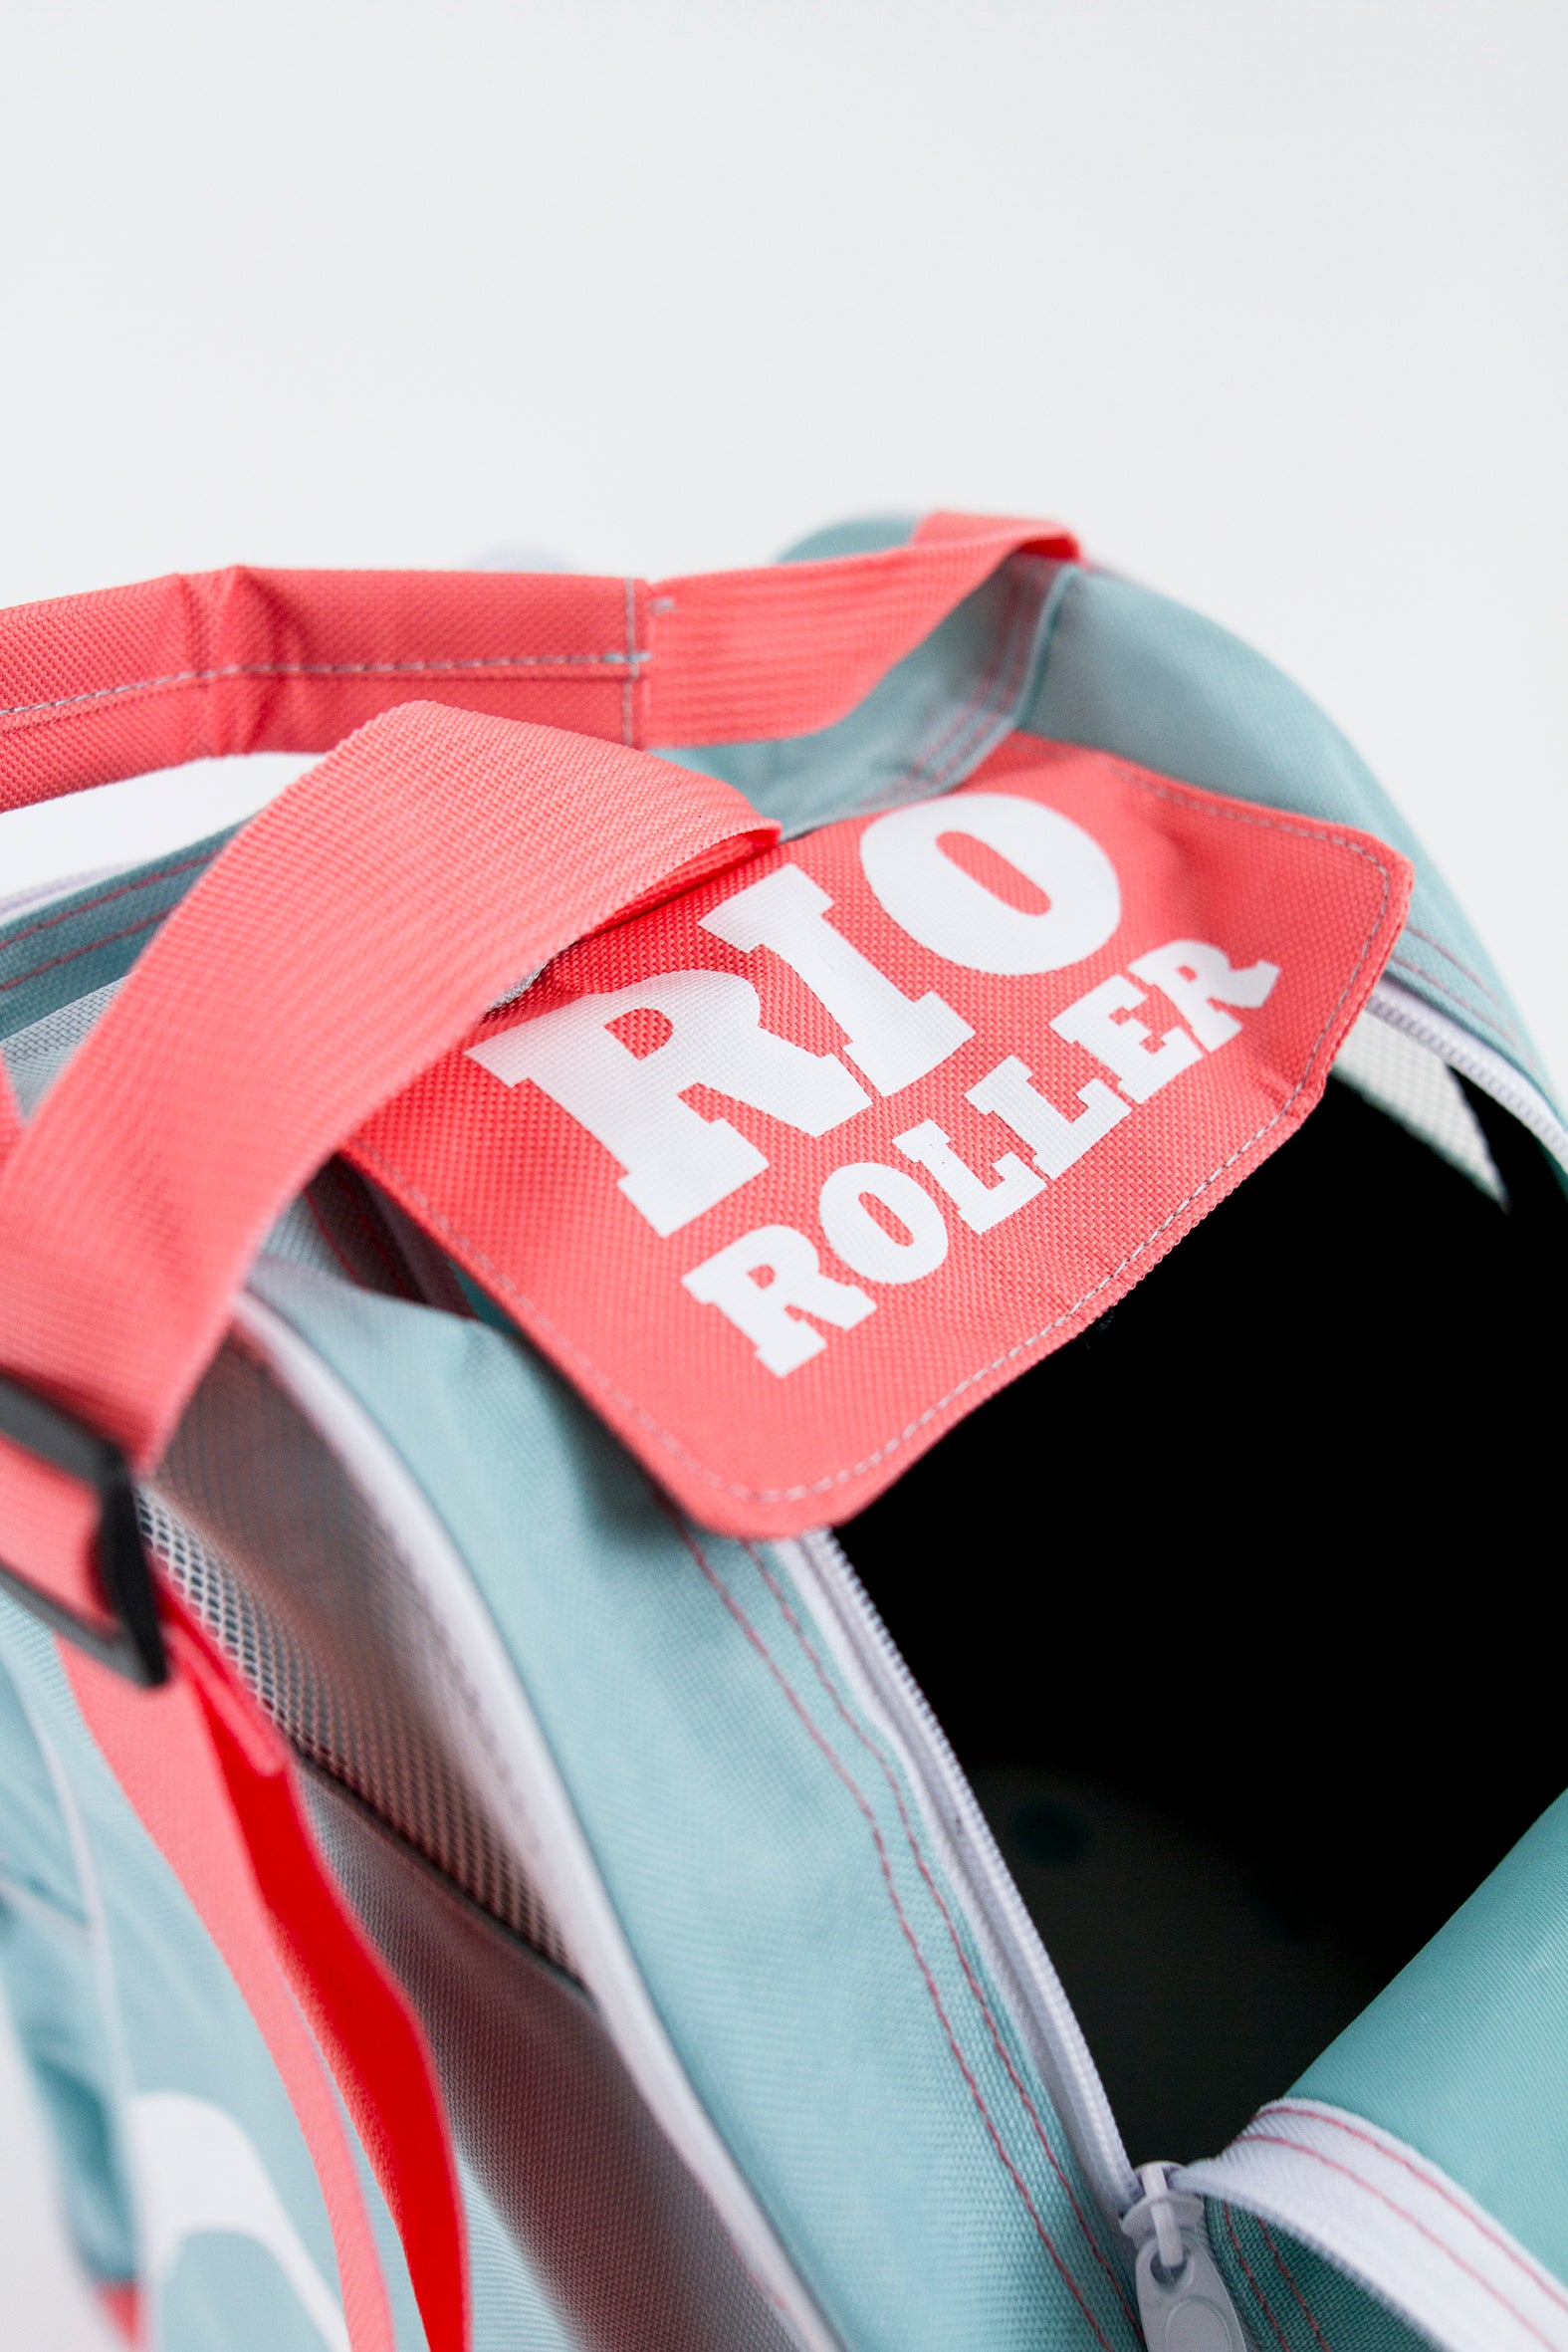 Rio Roller Script Skate Bag - Momma Trucker Skates